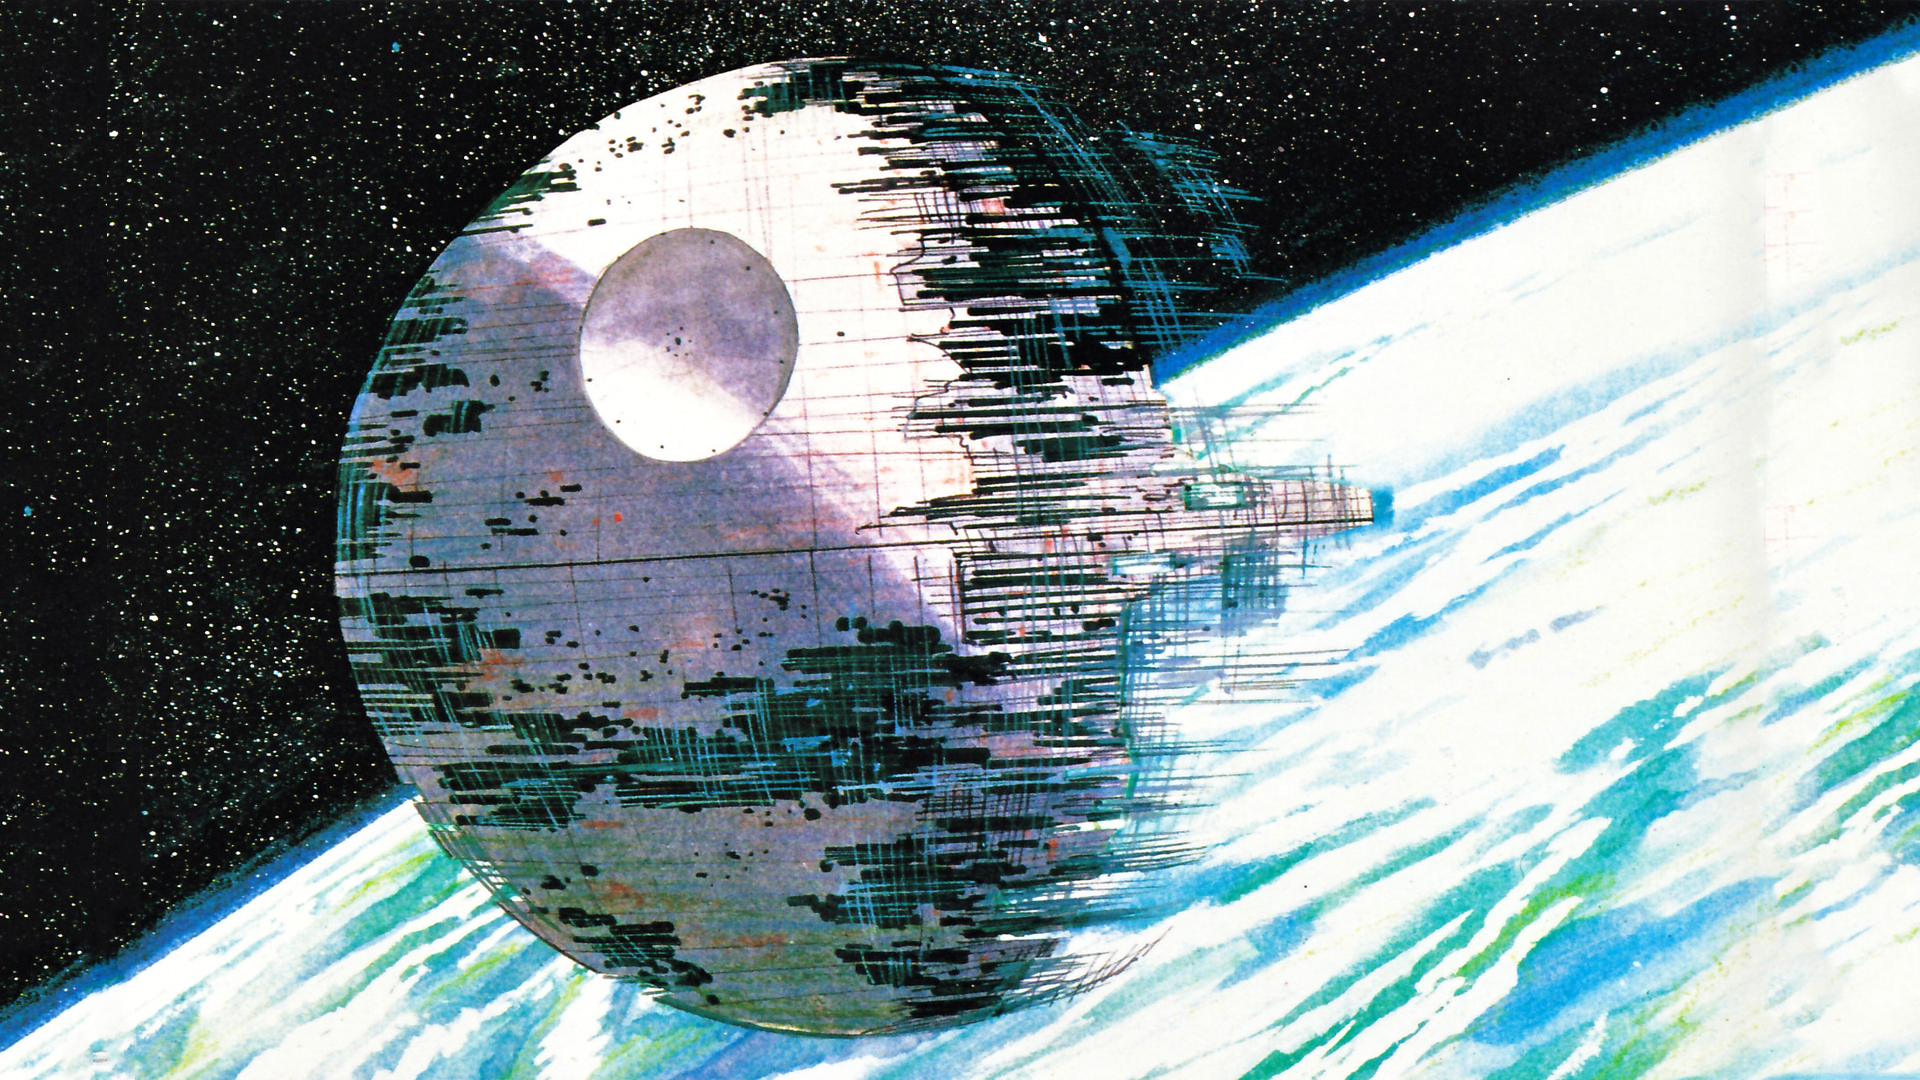 Star Wars Death Star Ralph McQuarrie wallpaper 1920x1080